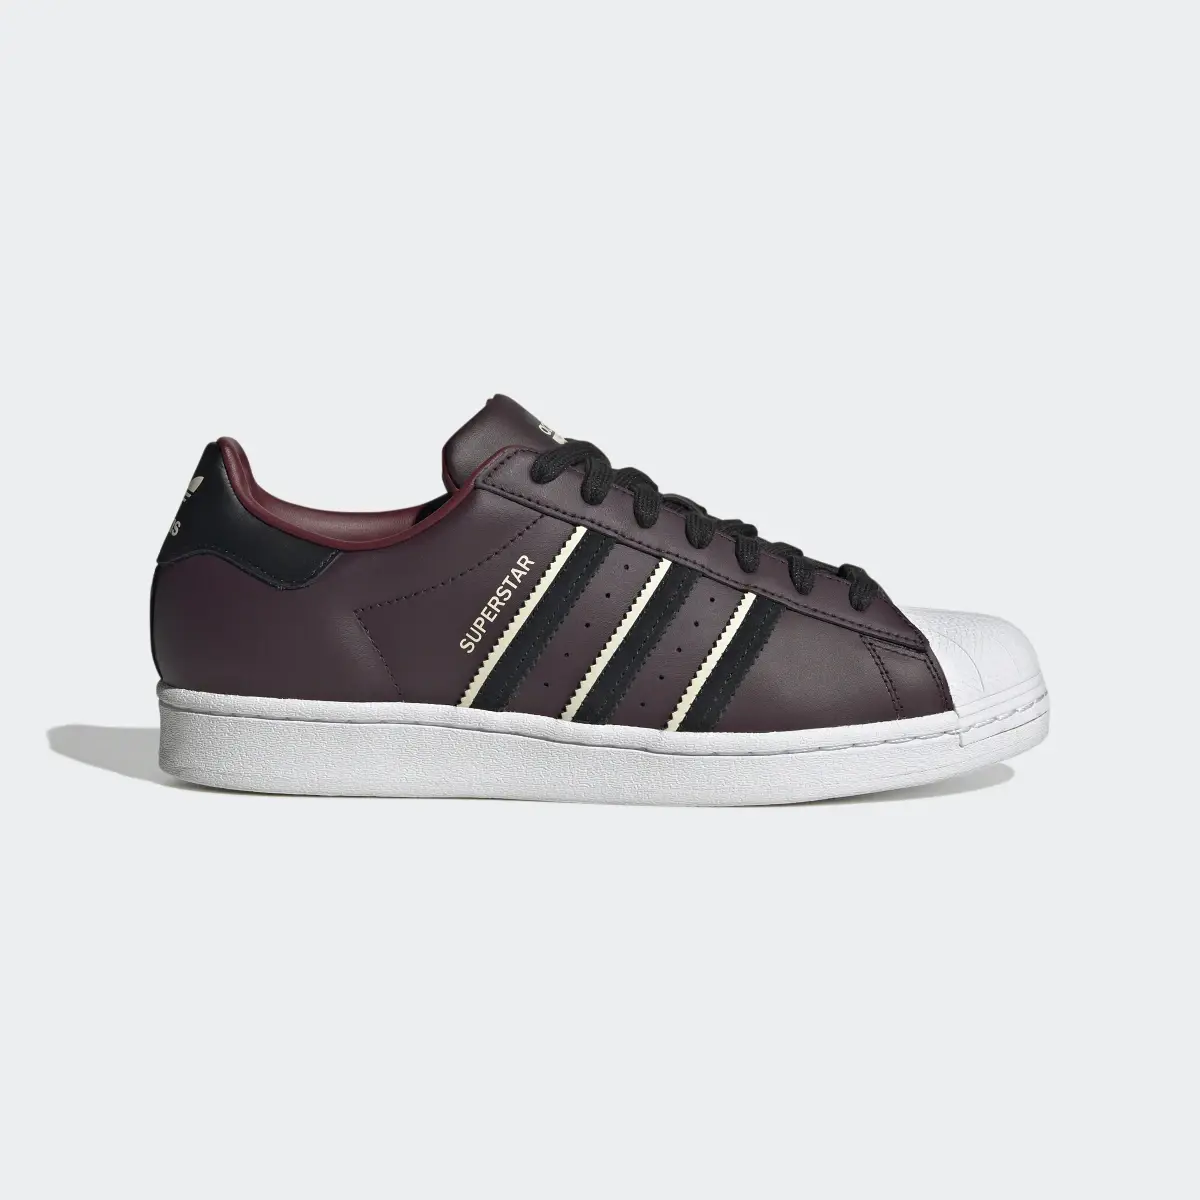 Adidas Superstar Ayakkabı. 2